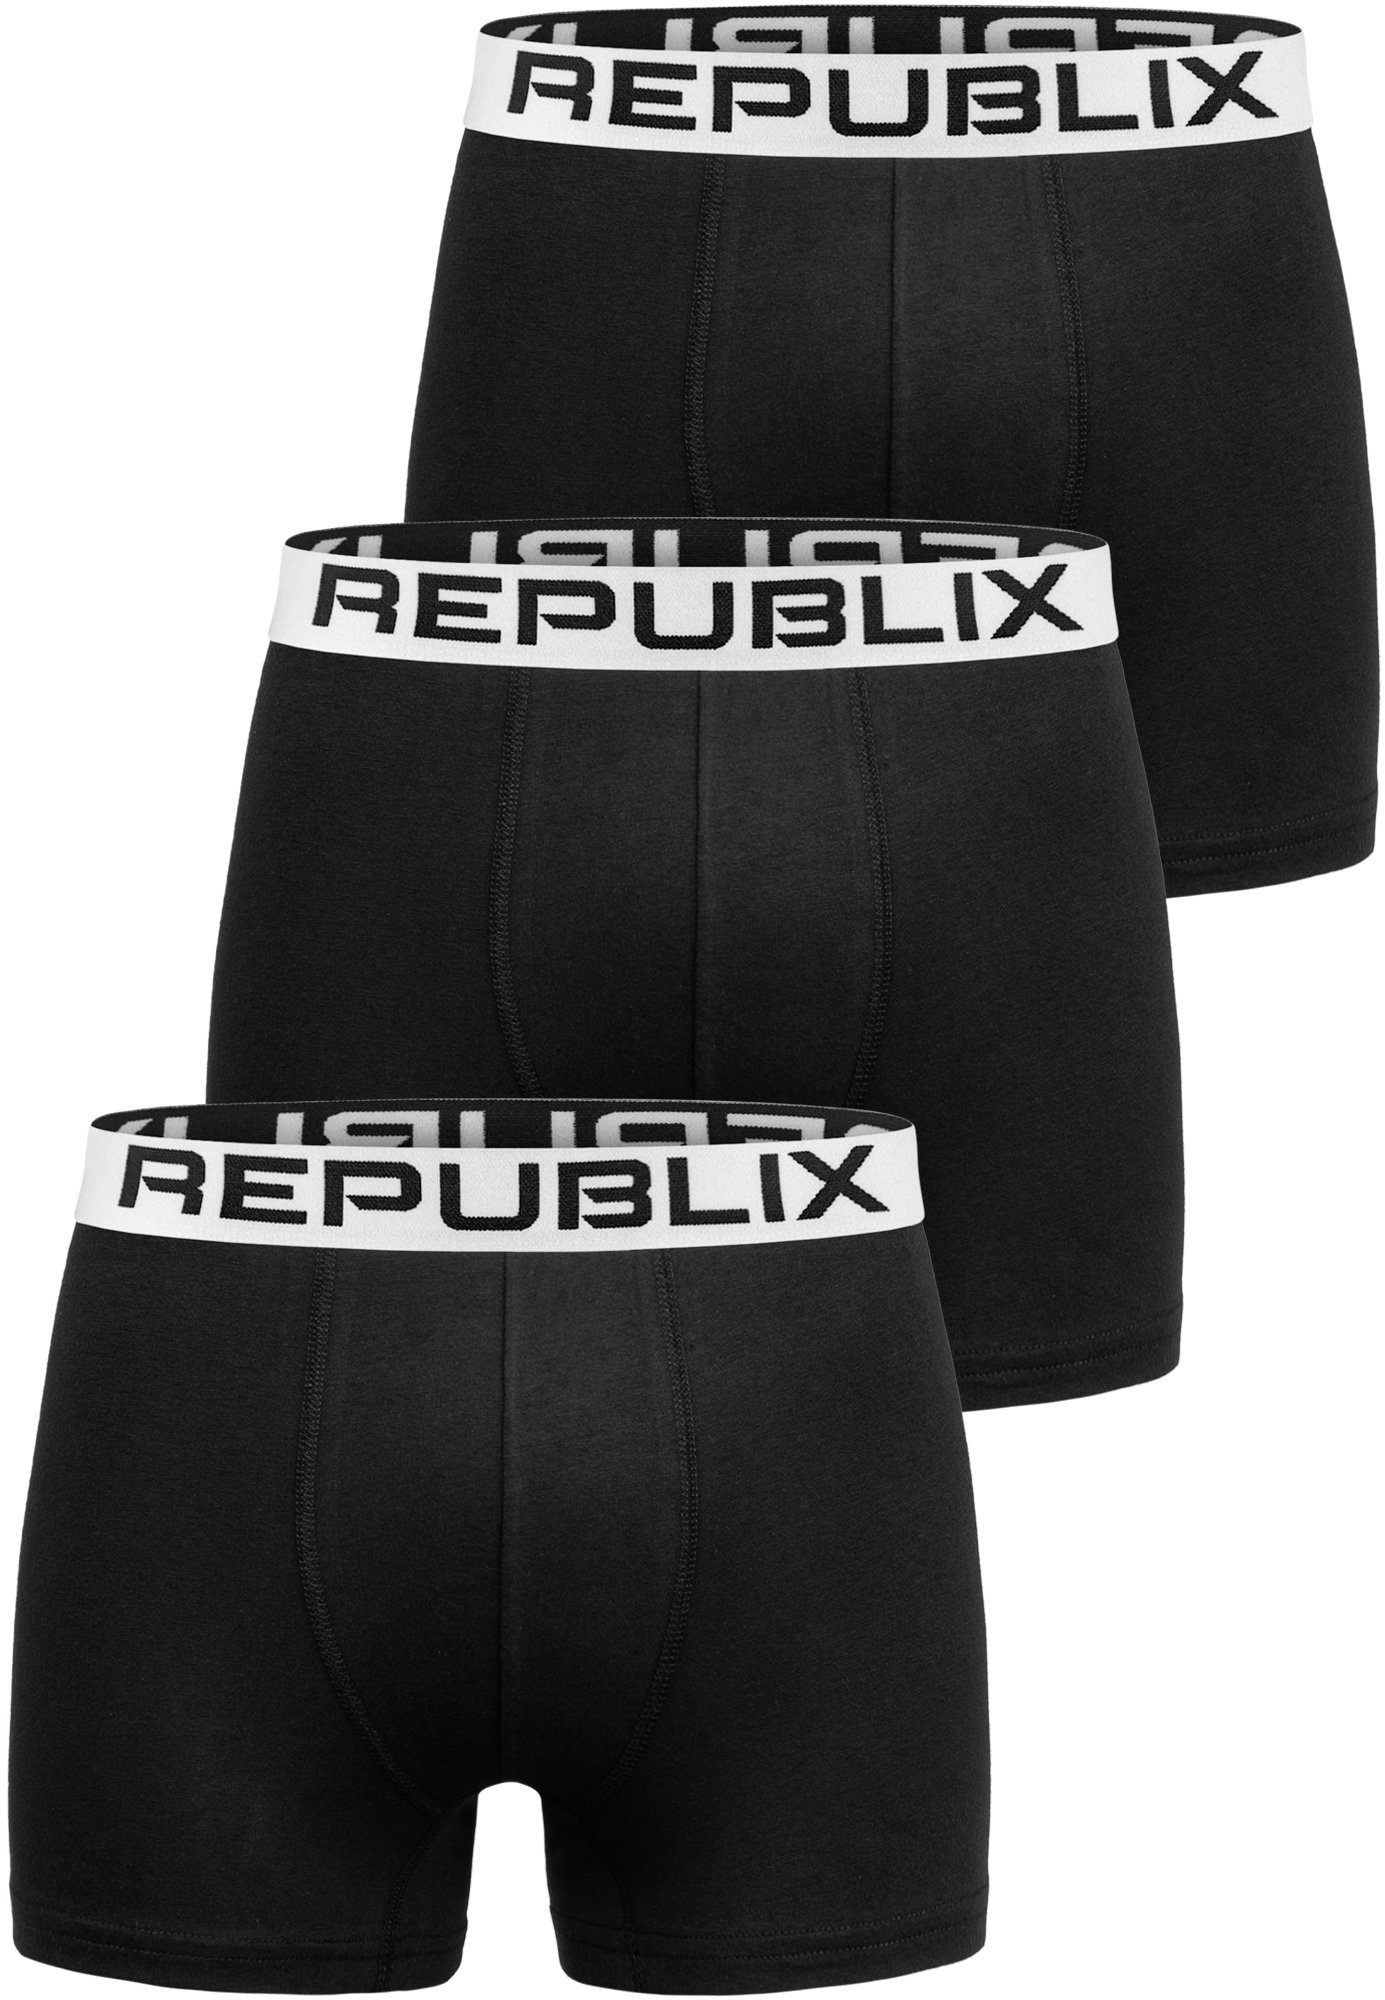 REPUBLIX Boxershorts DON (3er-Pack) Baumwolle Herren Schwarz/Weiß Unterhose Männer Unterwäsche